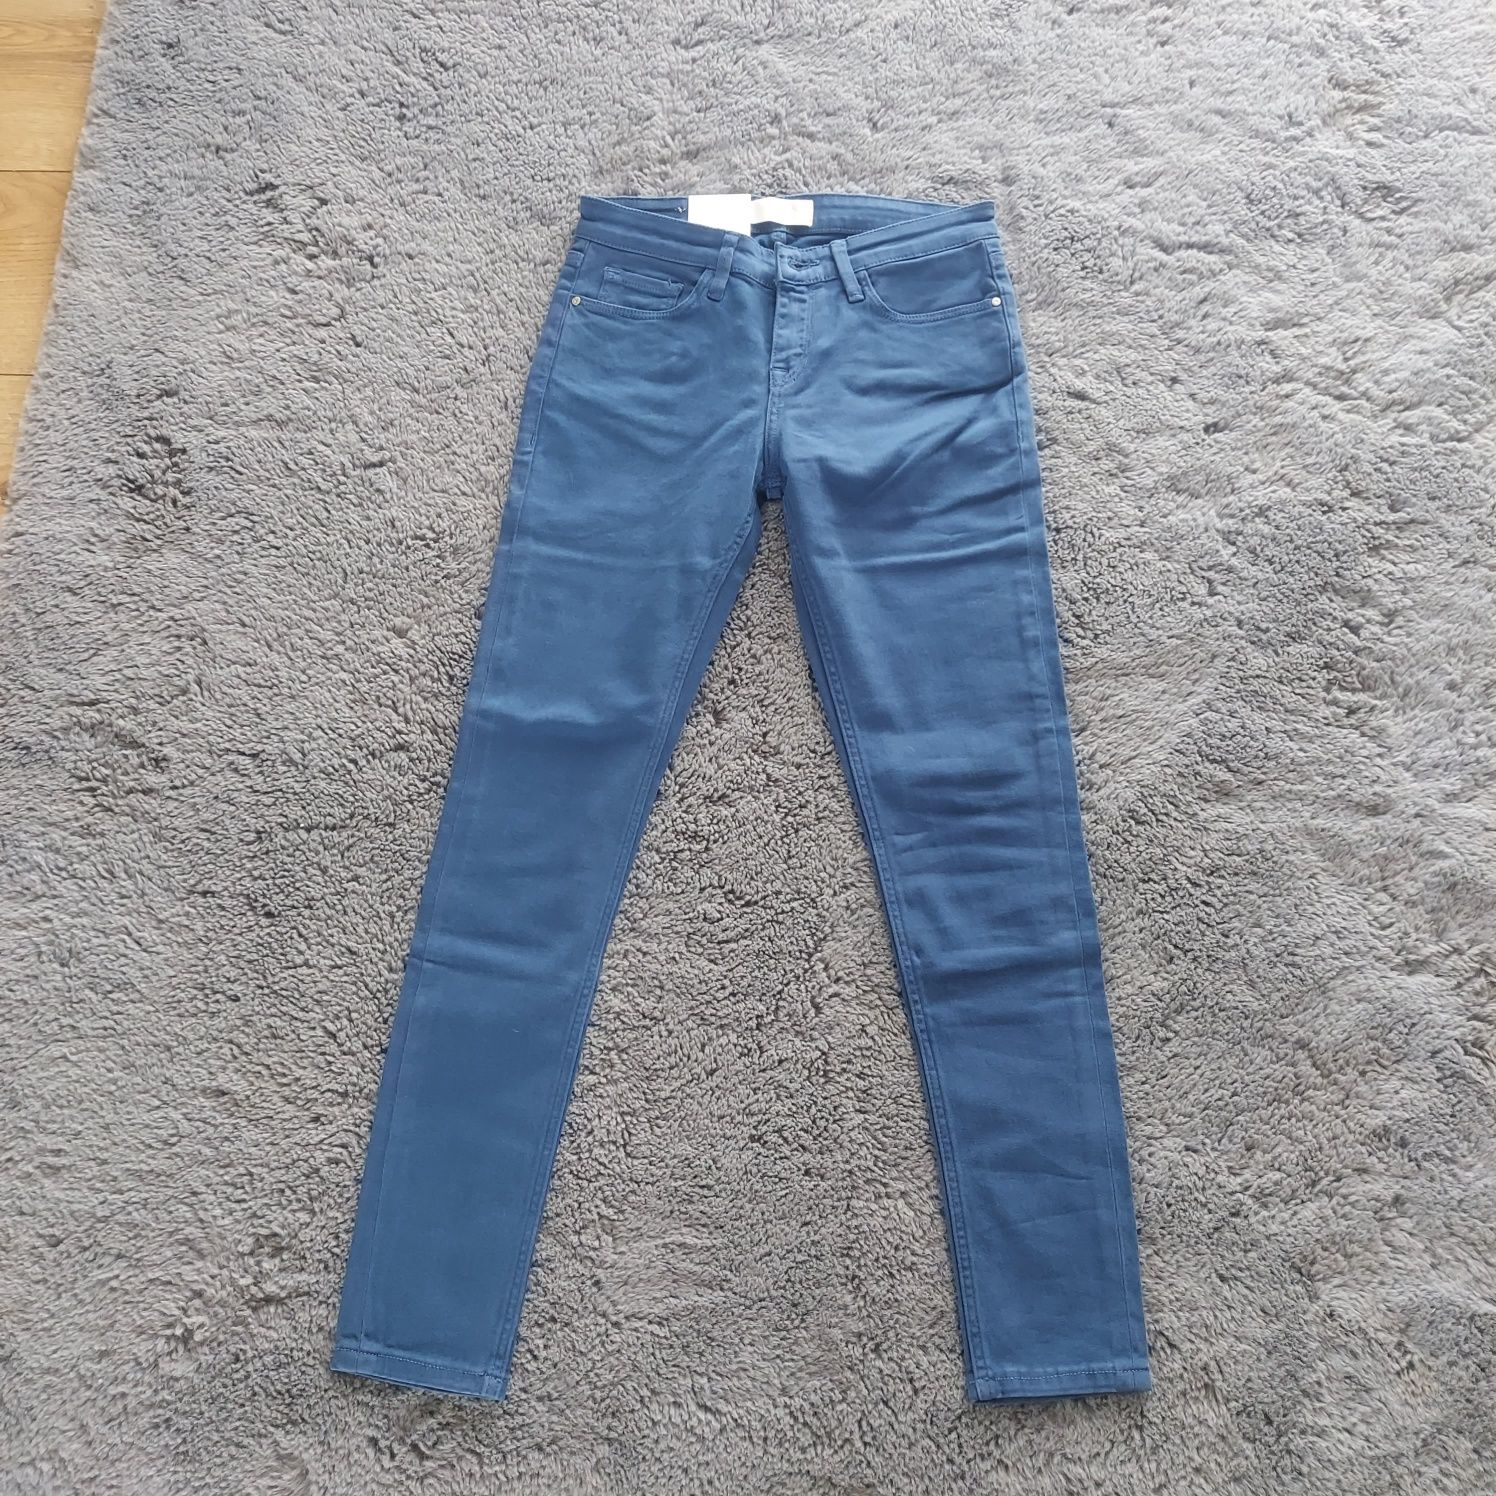 Nowe spodnie jeansy rurki cross w25 xs 34 alyss